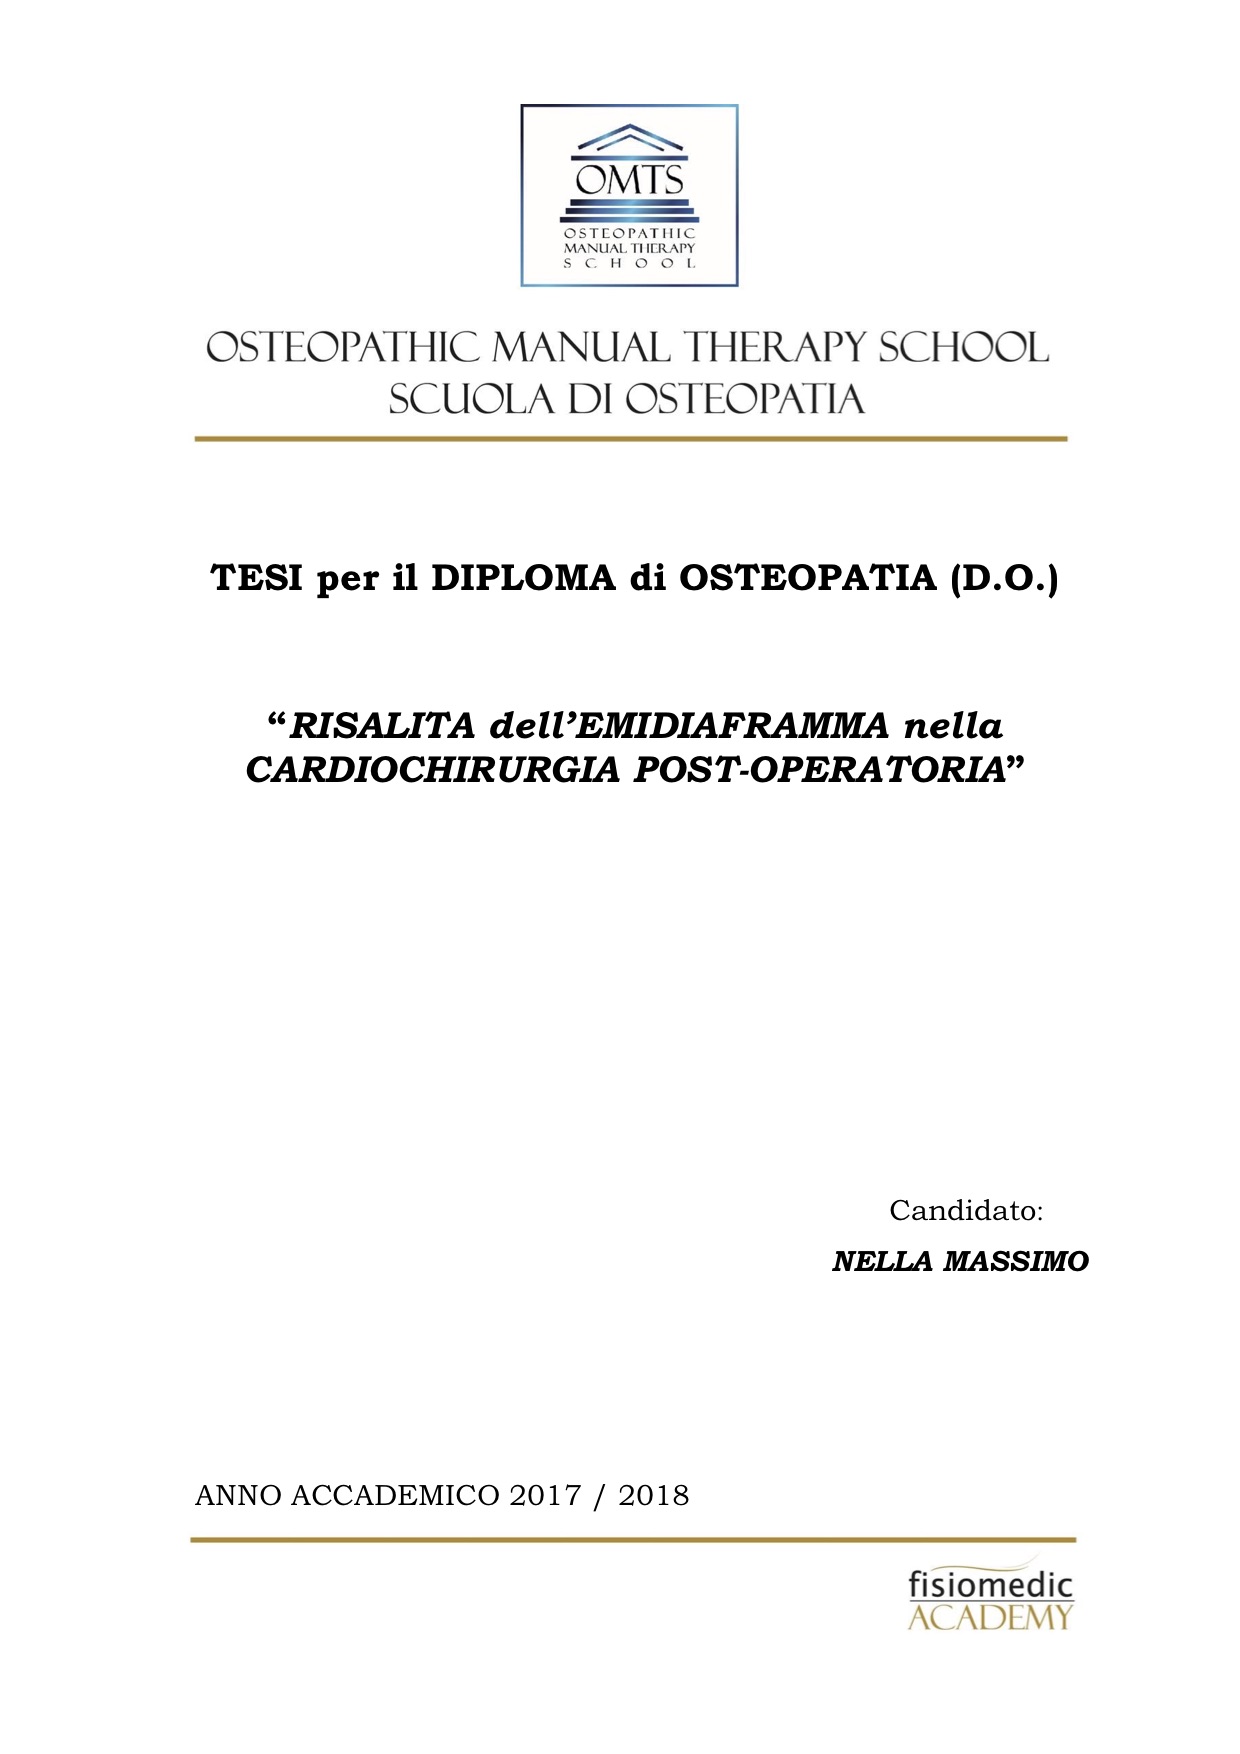 Massimo Nella Tesi Diploma Osteopatia 2018